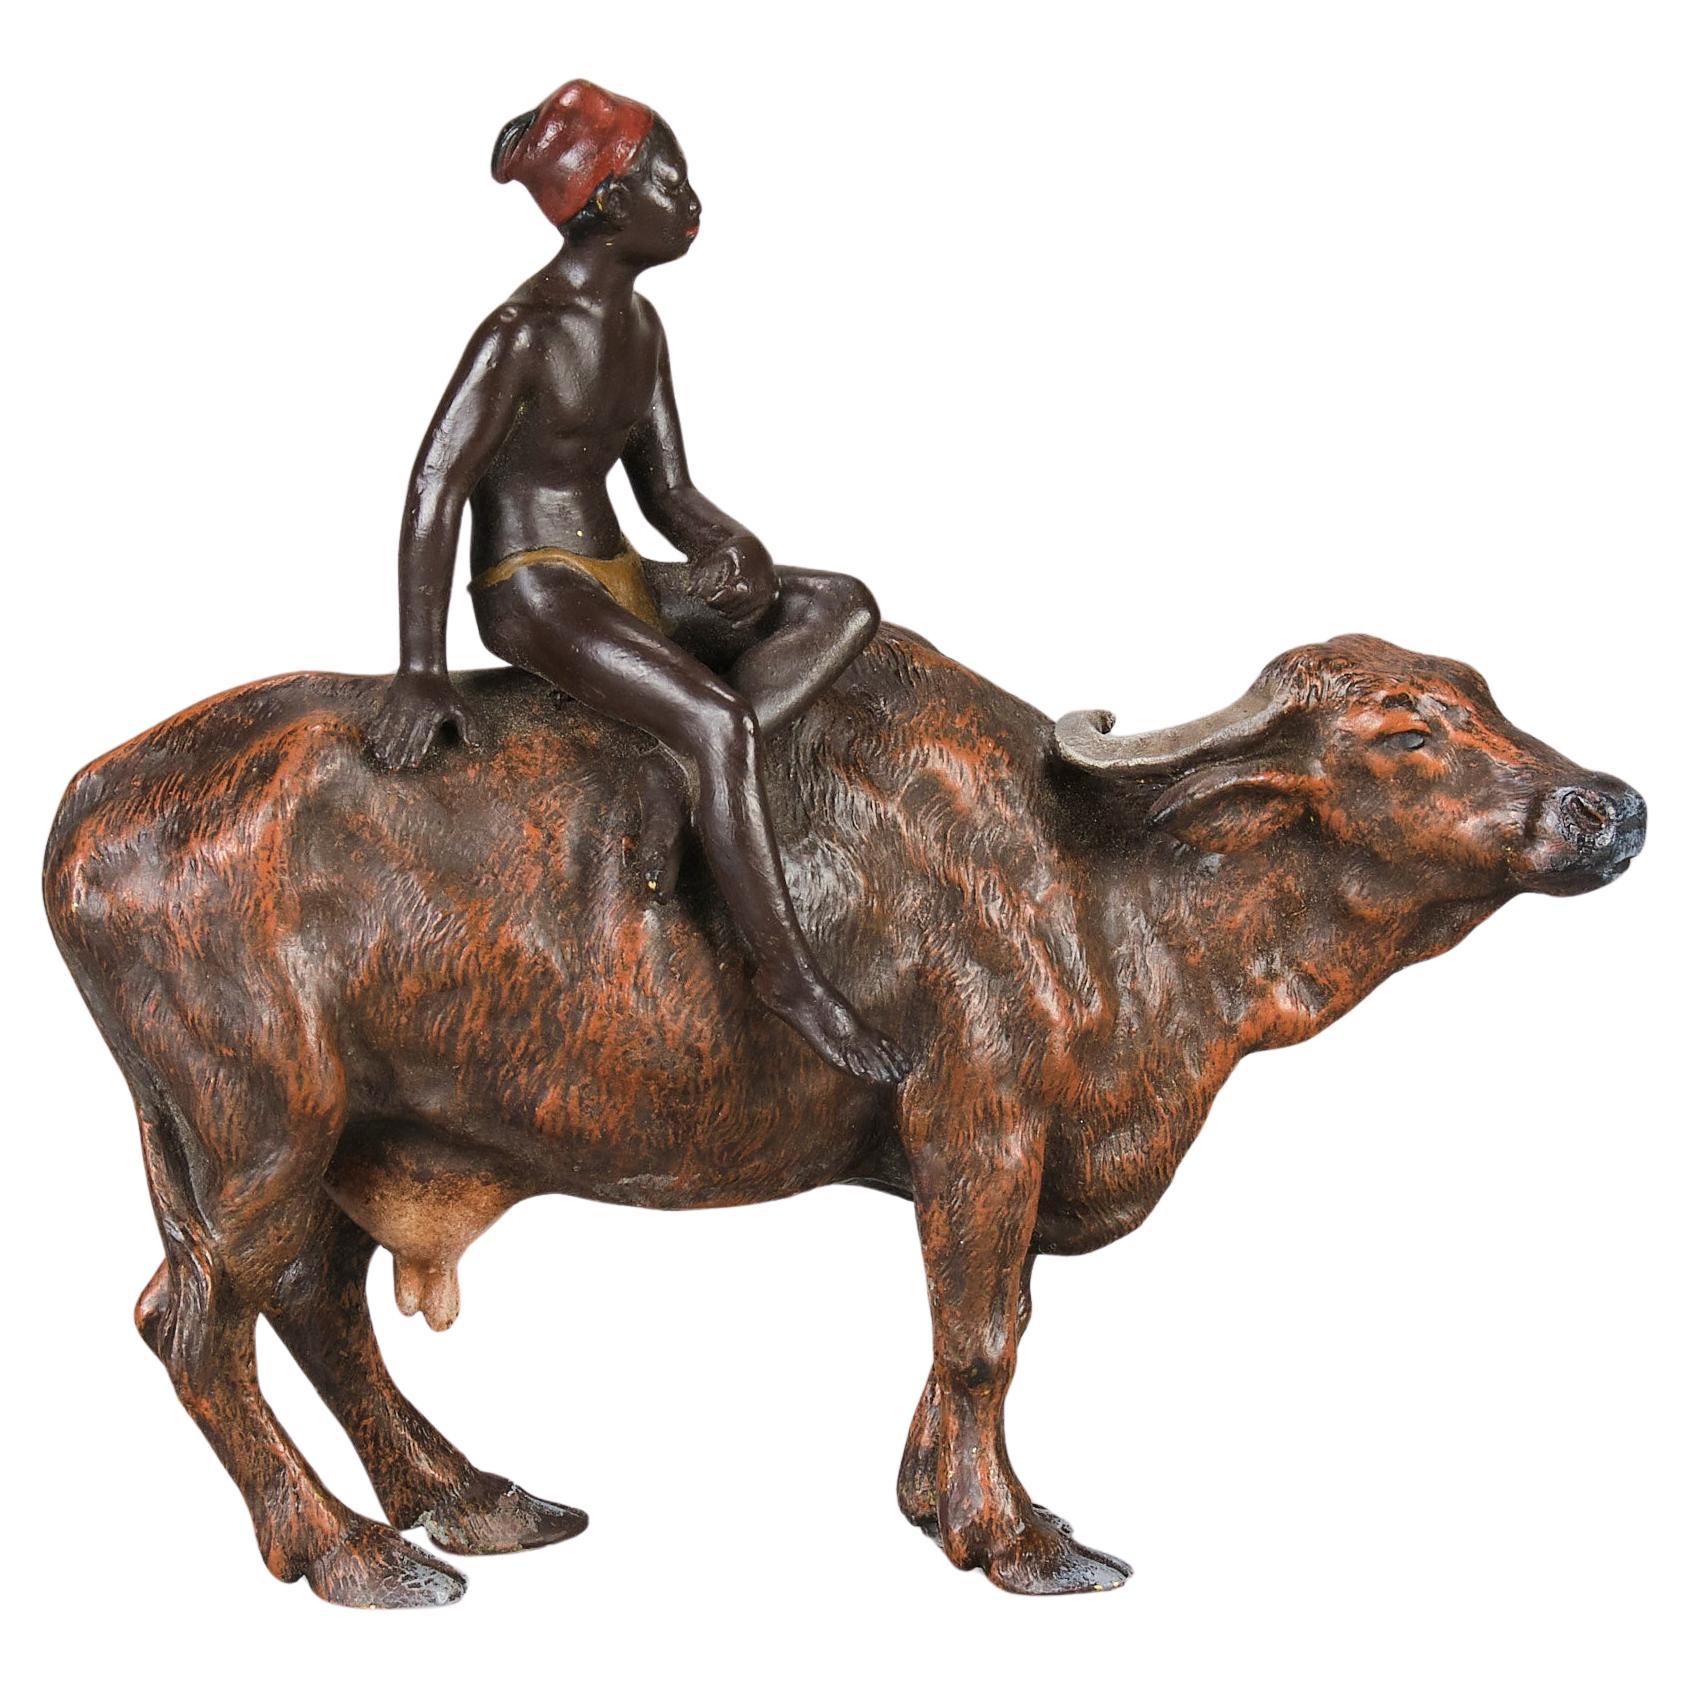 Cold-bemalte Bronzeskulptur „Boy on Ox“ aus dem frühen 20. Jahrhundert von Franz Bergman